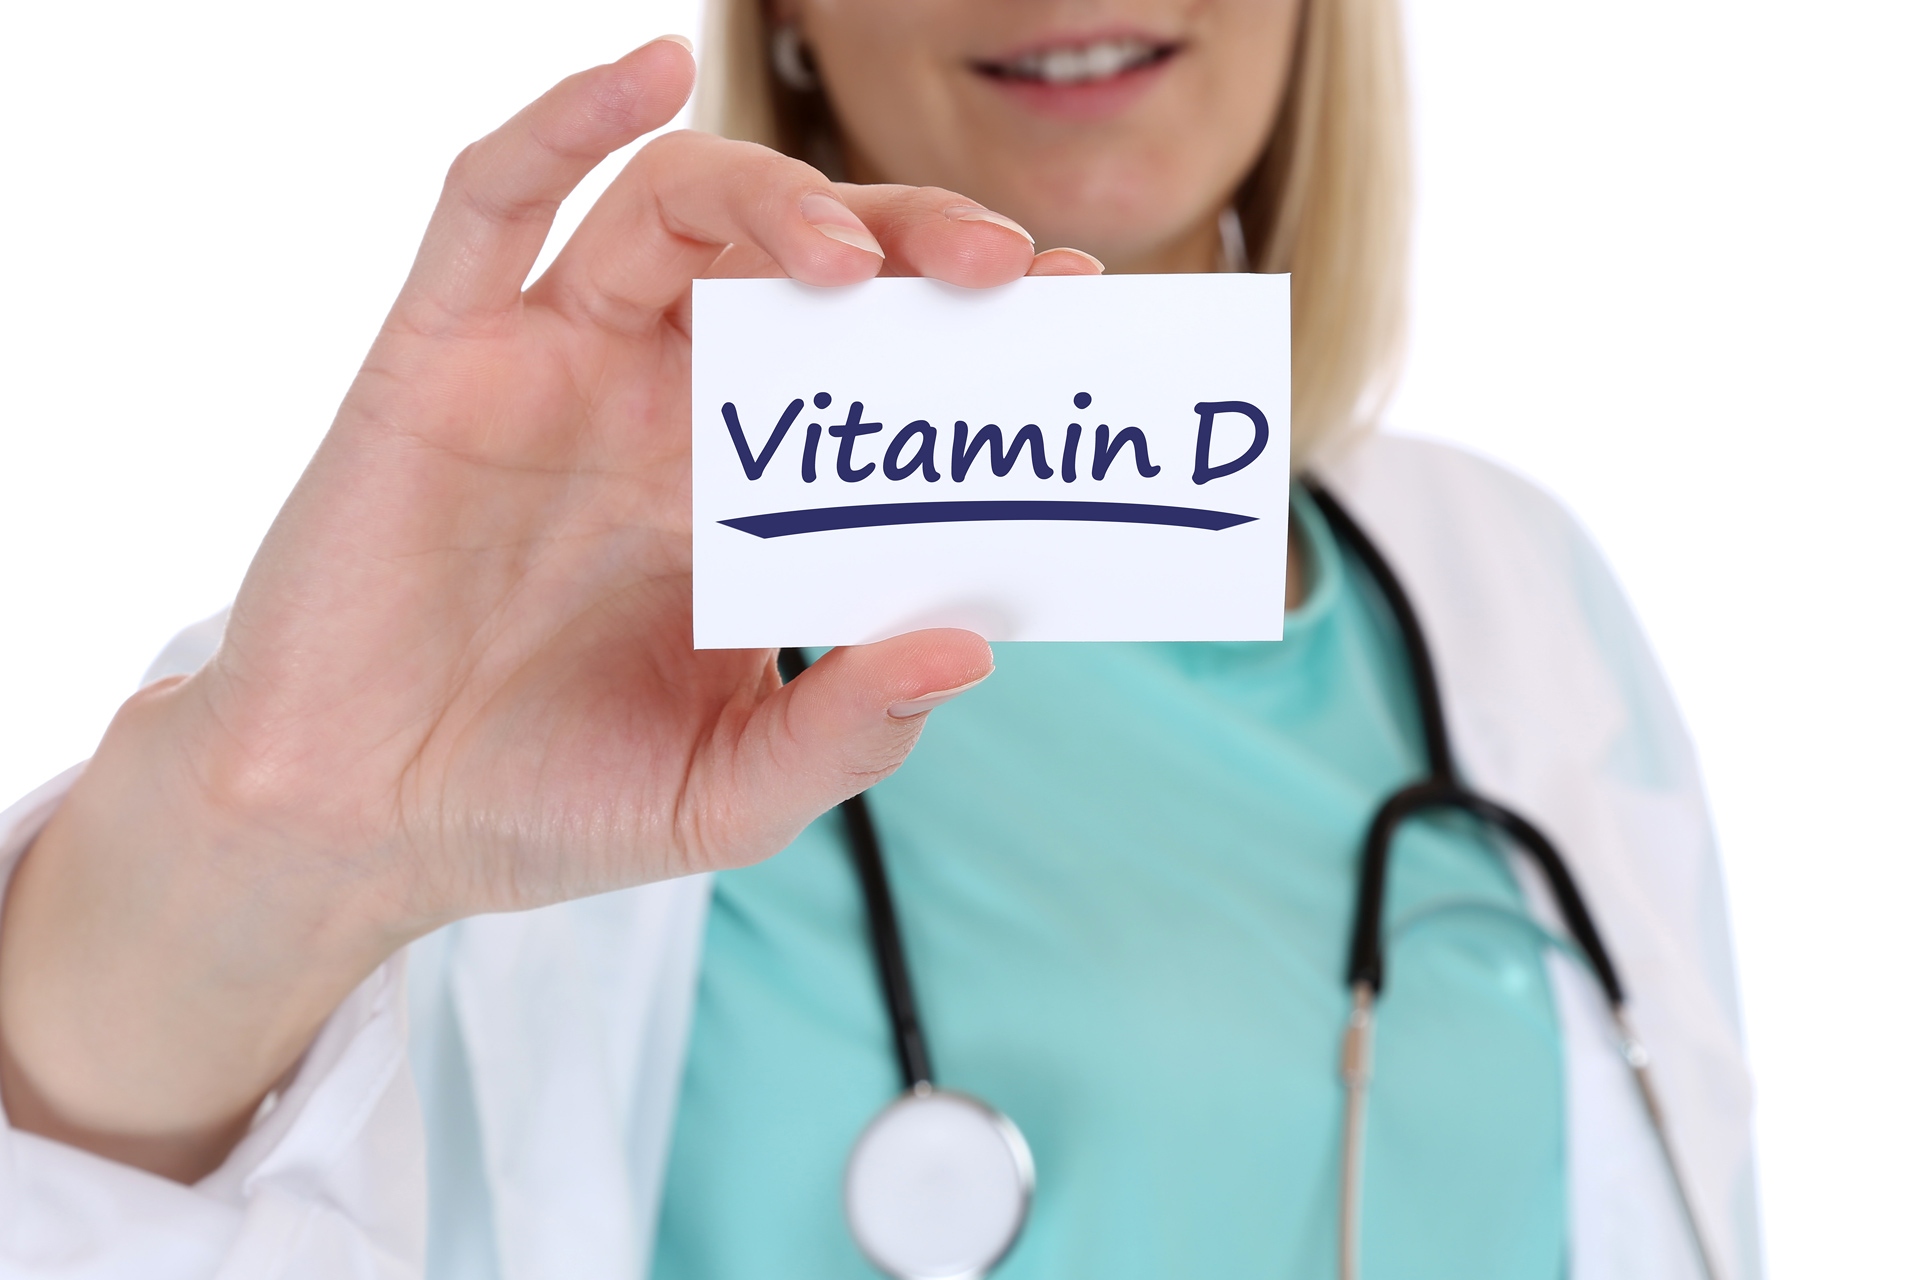 la vitamina D esencial para la salud de los huesos